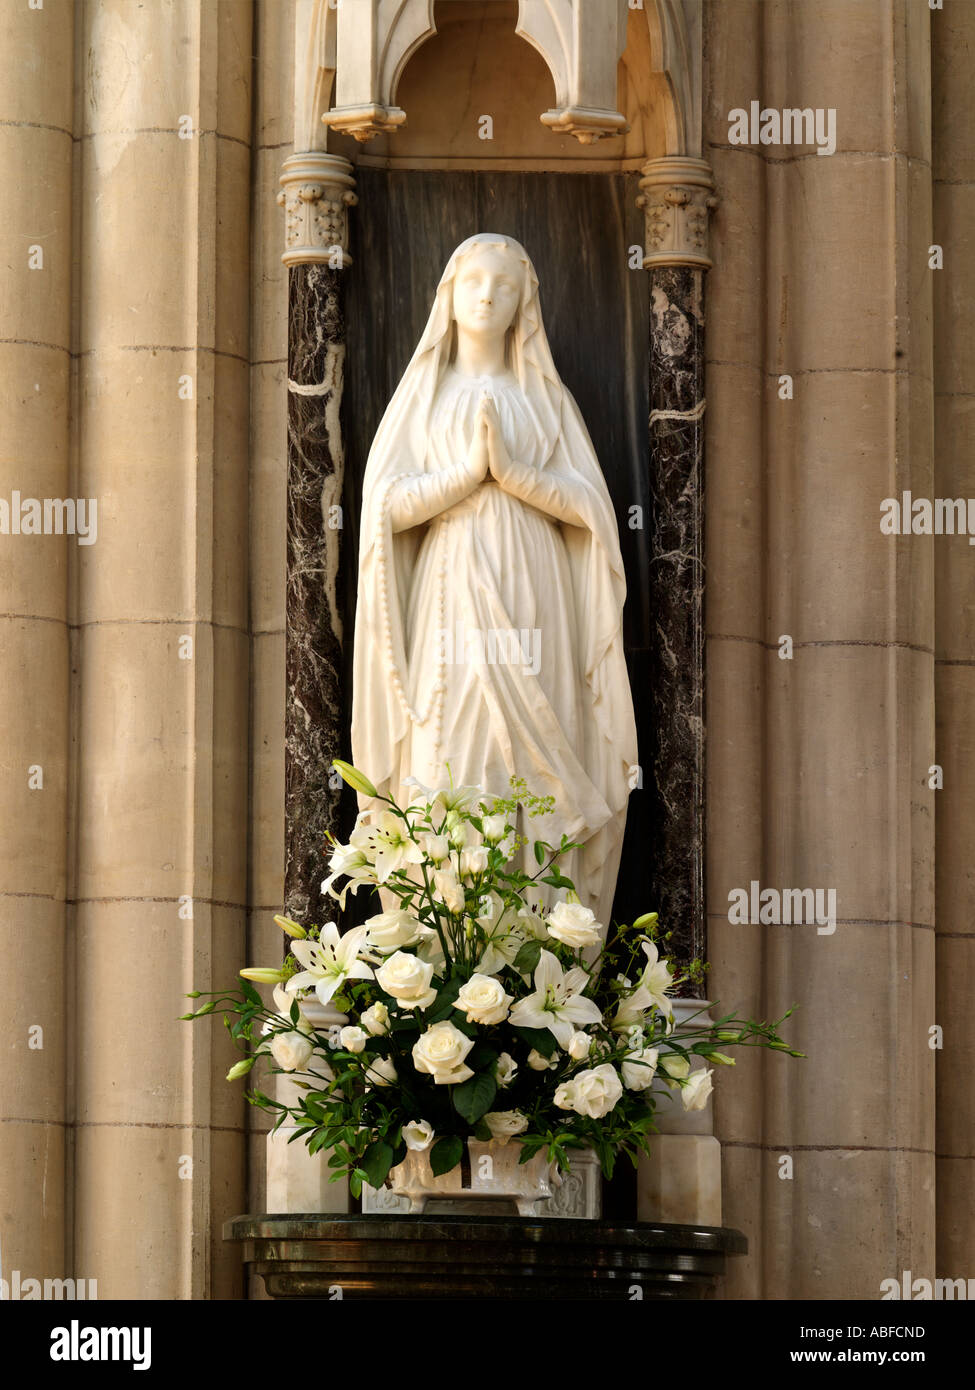 Heiligsten Herzen Wimbledon London England Statue der Jungfrau Maria mit Lilien Stockfoto